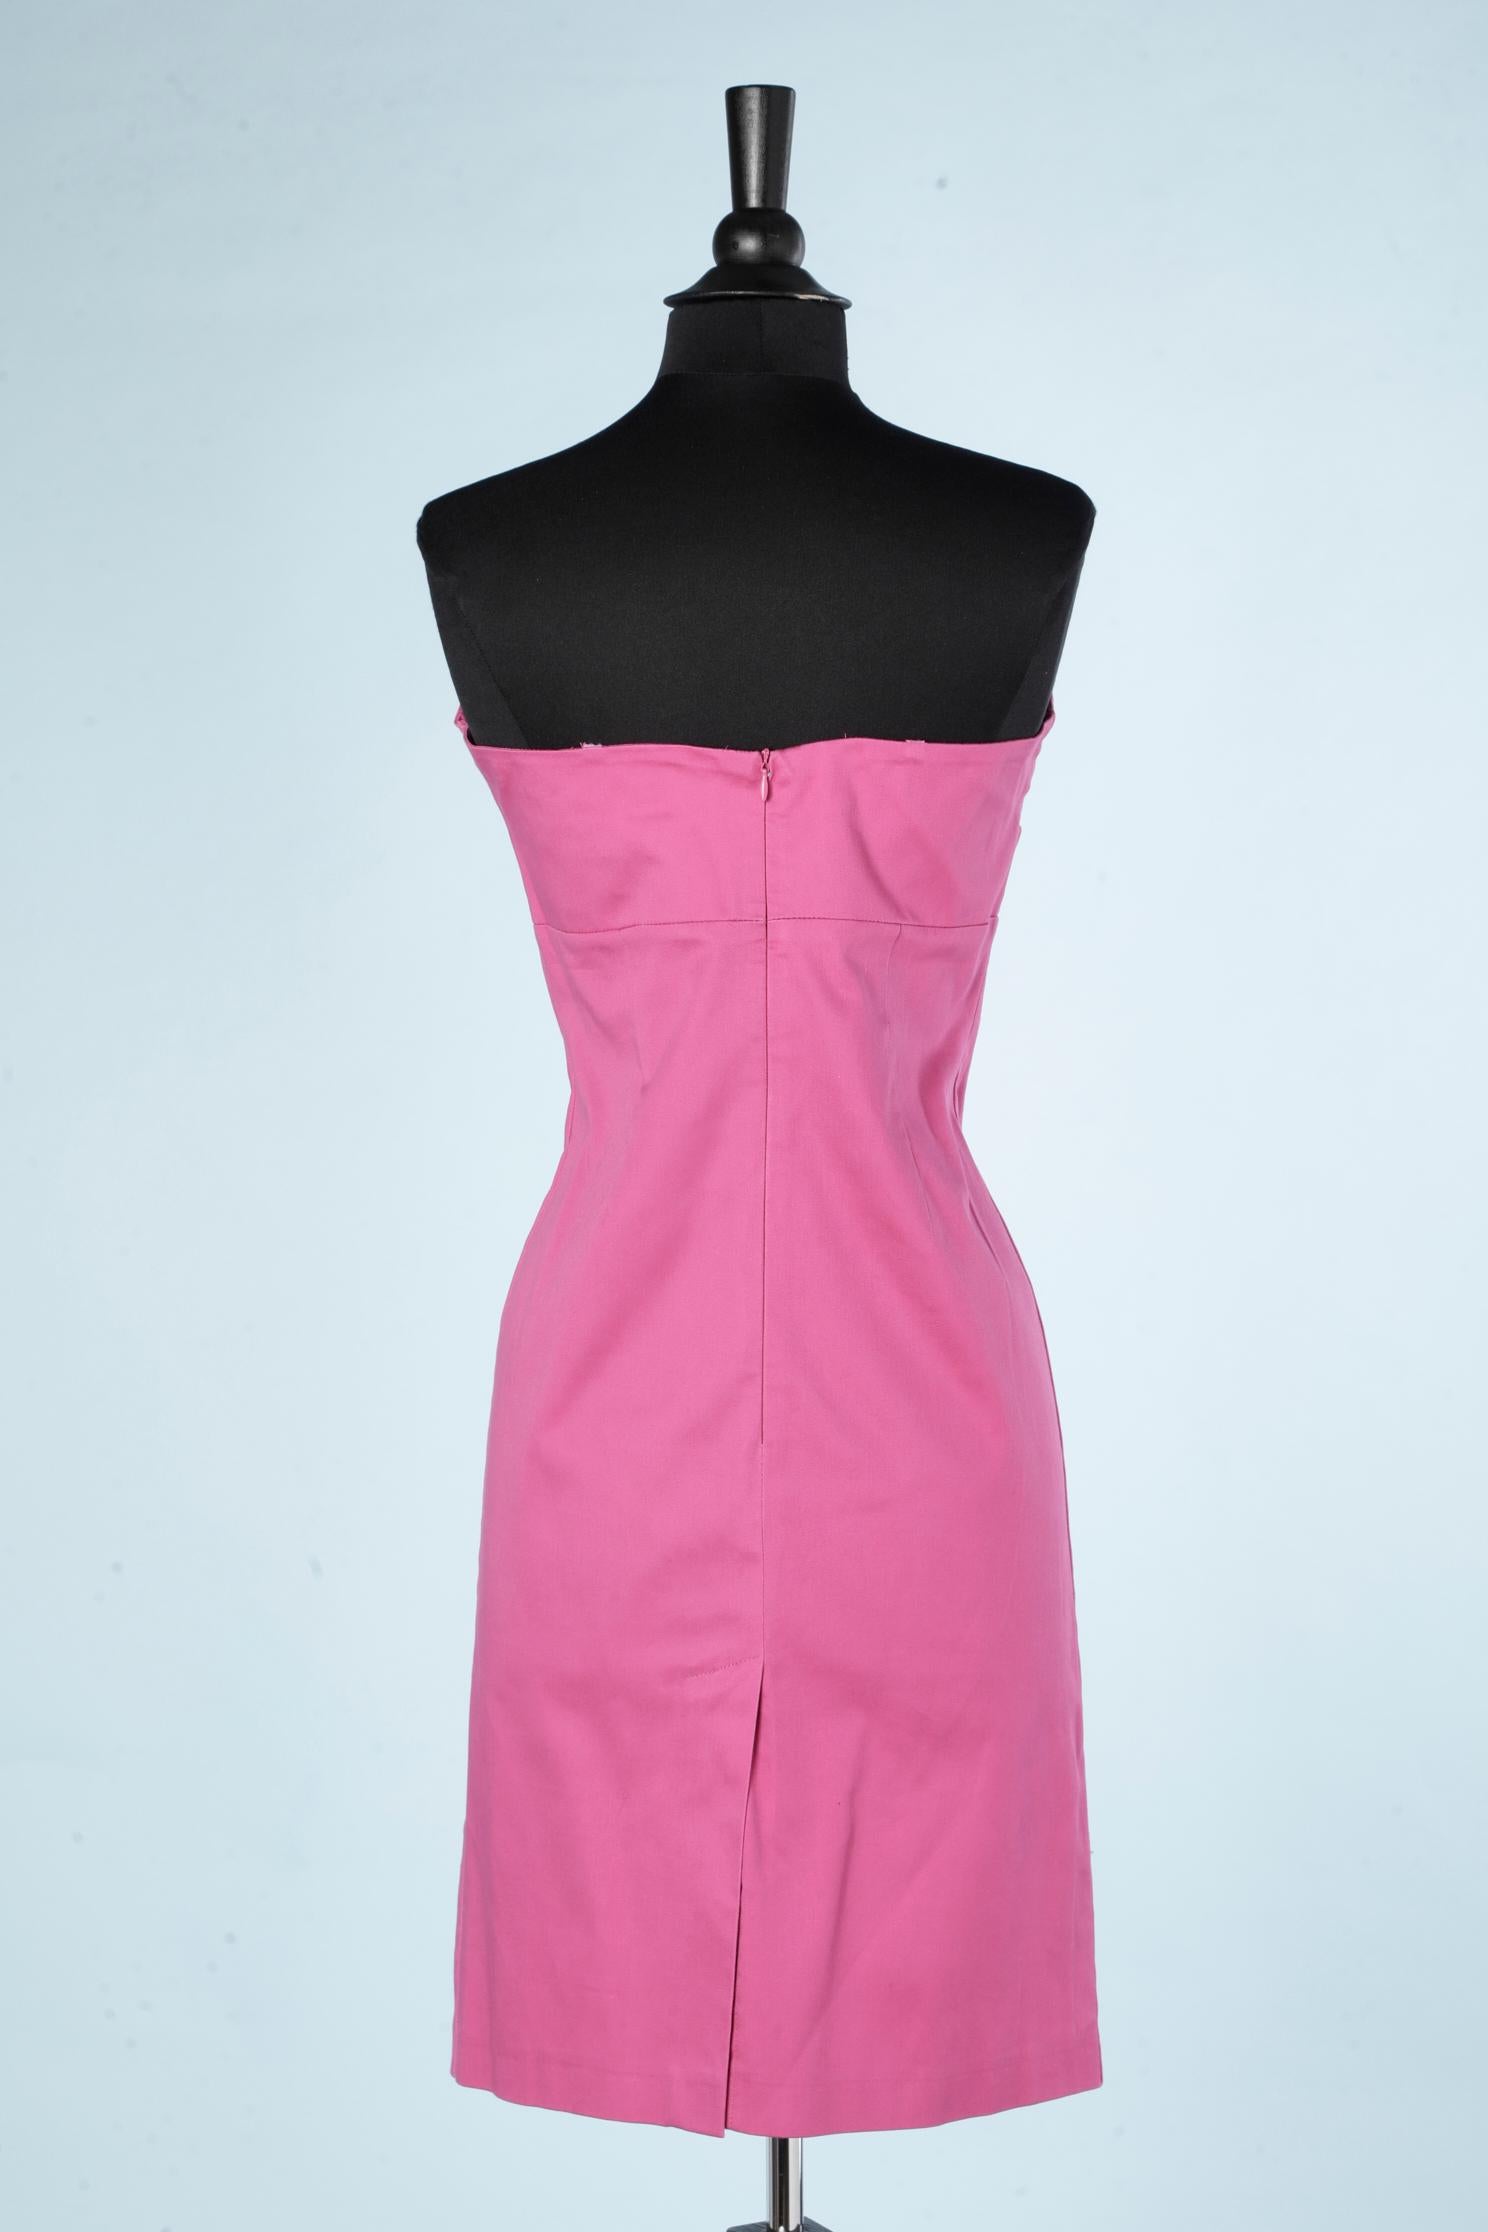 pink bustier dress